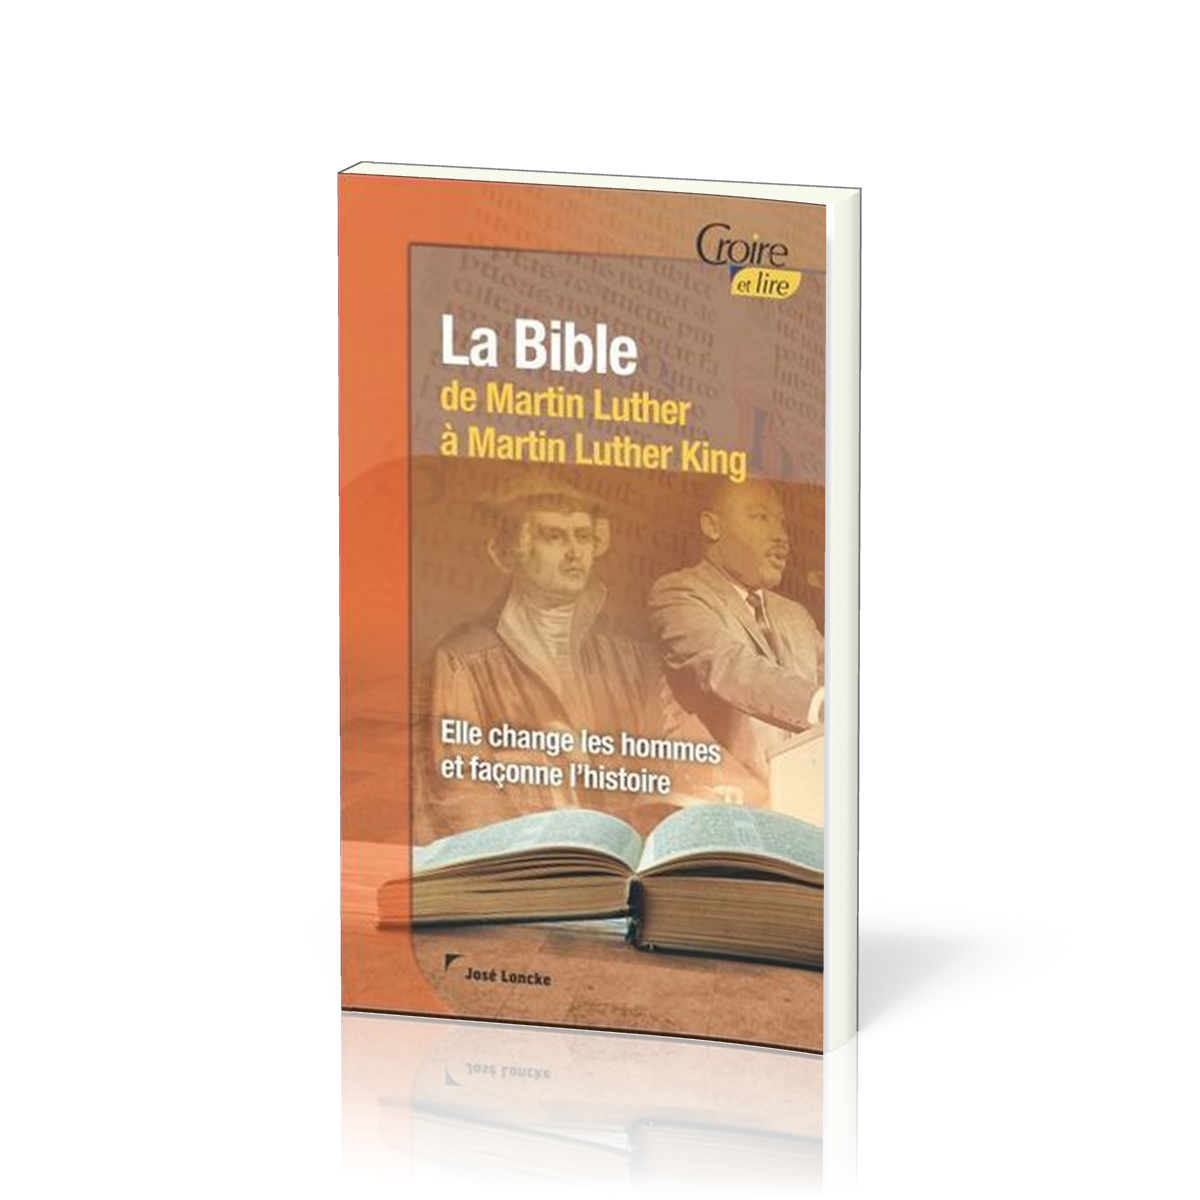 Bible (La) de Martin Luther à Martin Luther King - Croire pocket 46